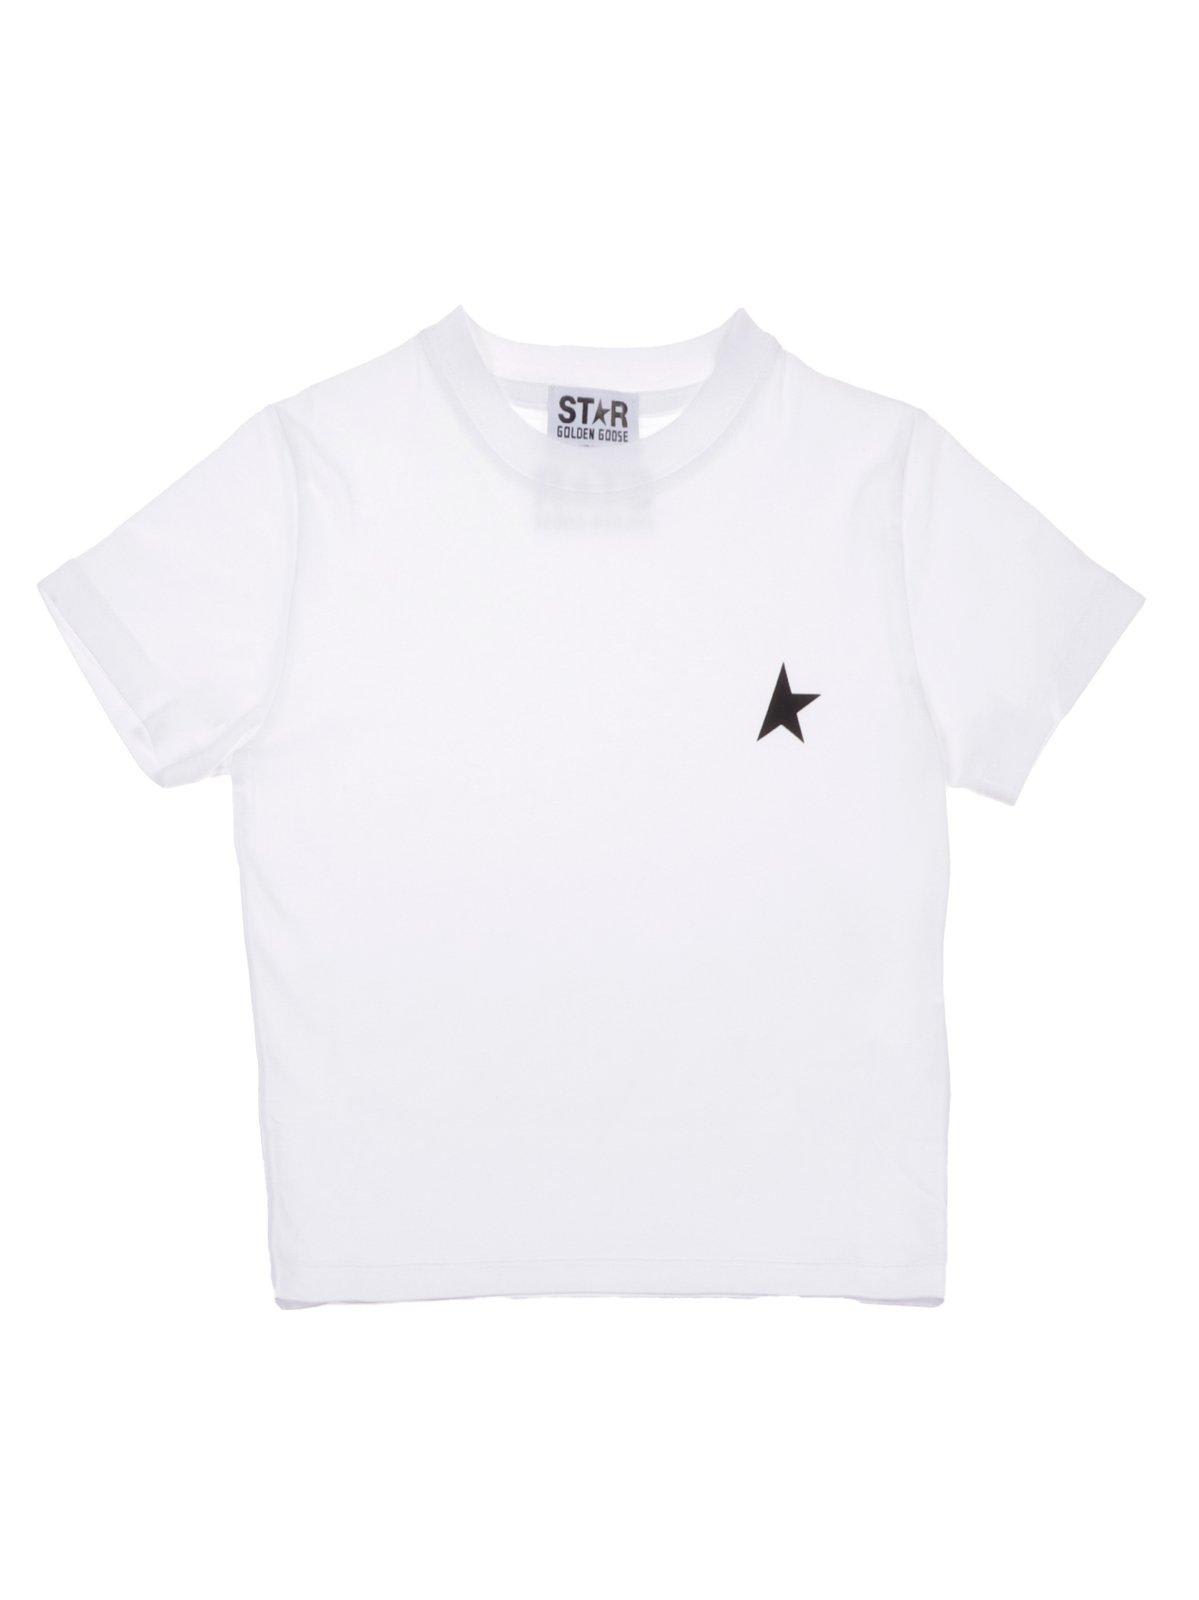 Golden Goose Star Printed Crewneck T-shirt